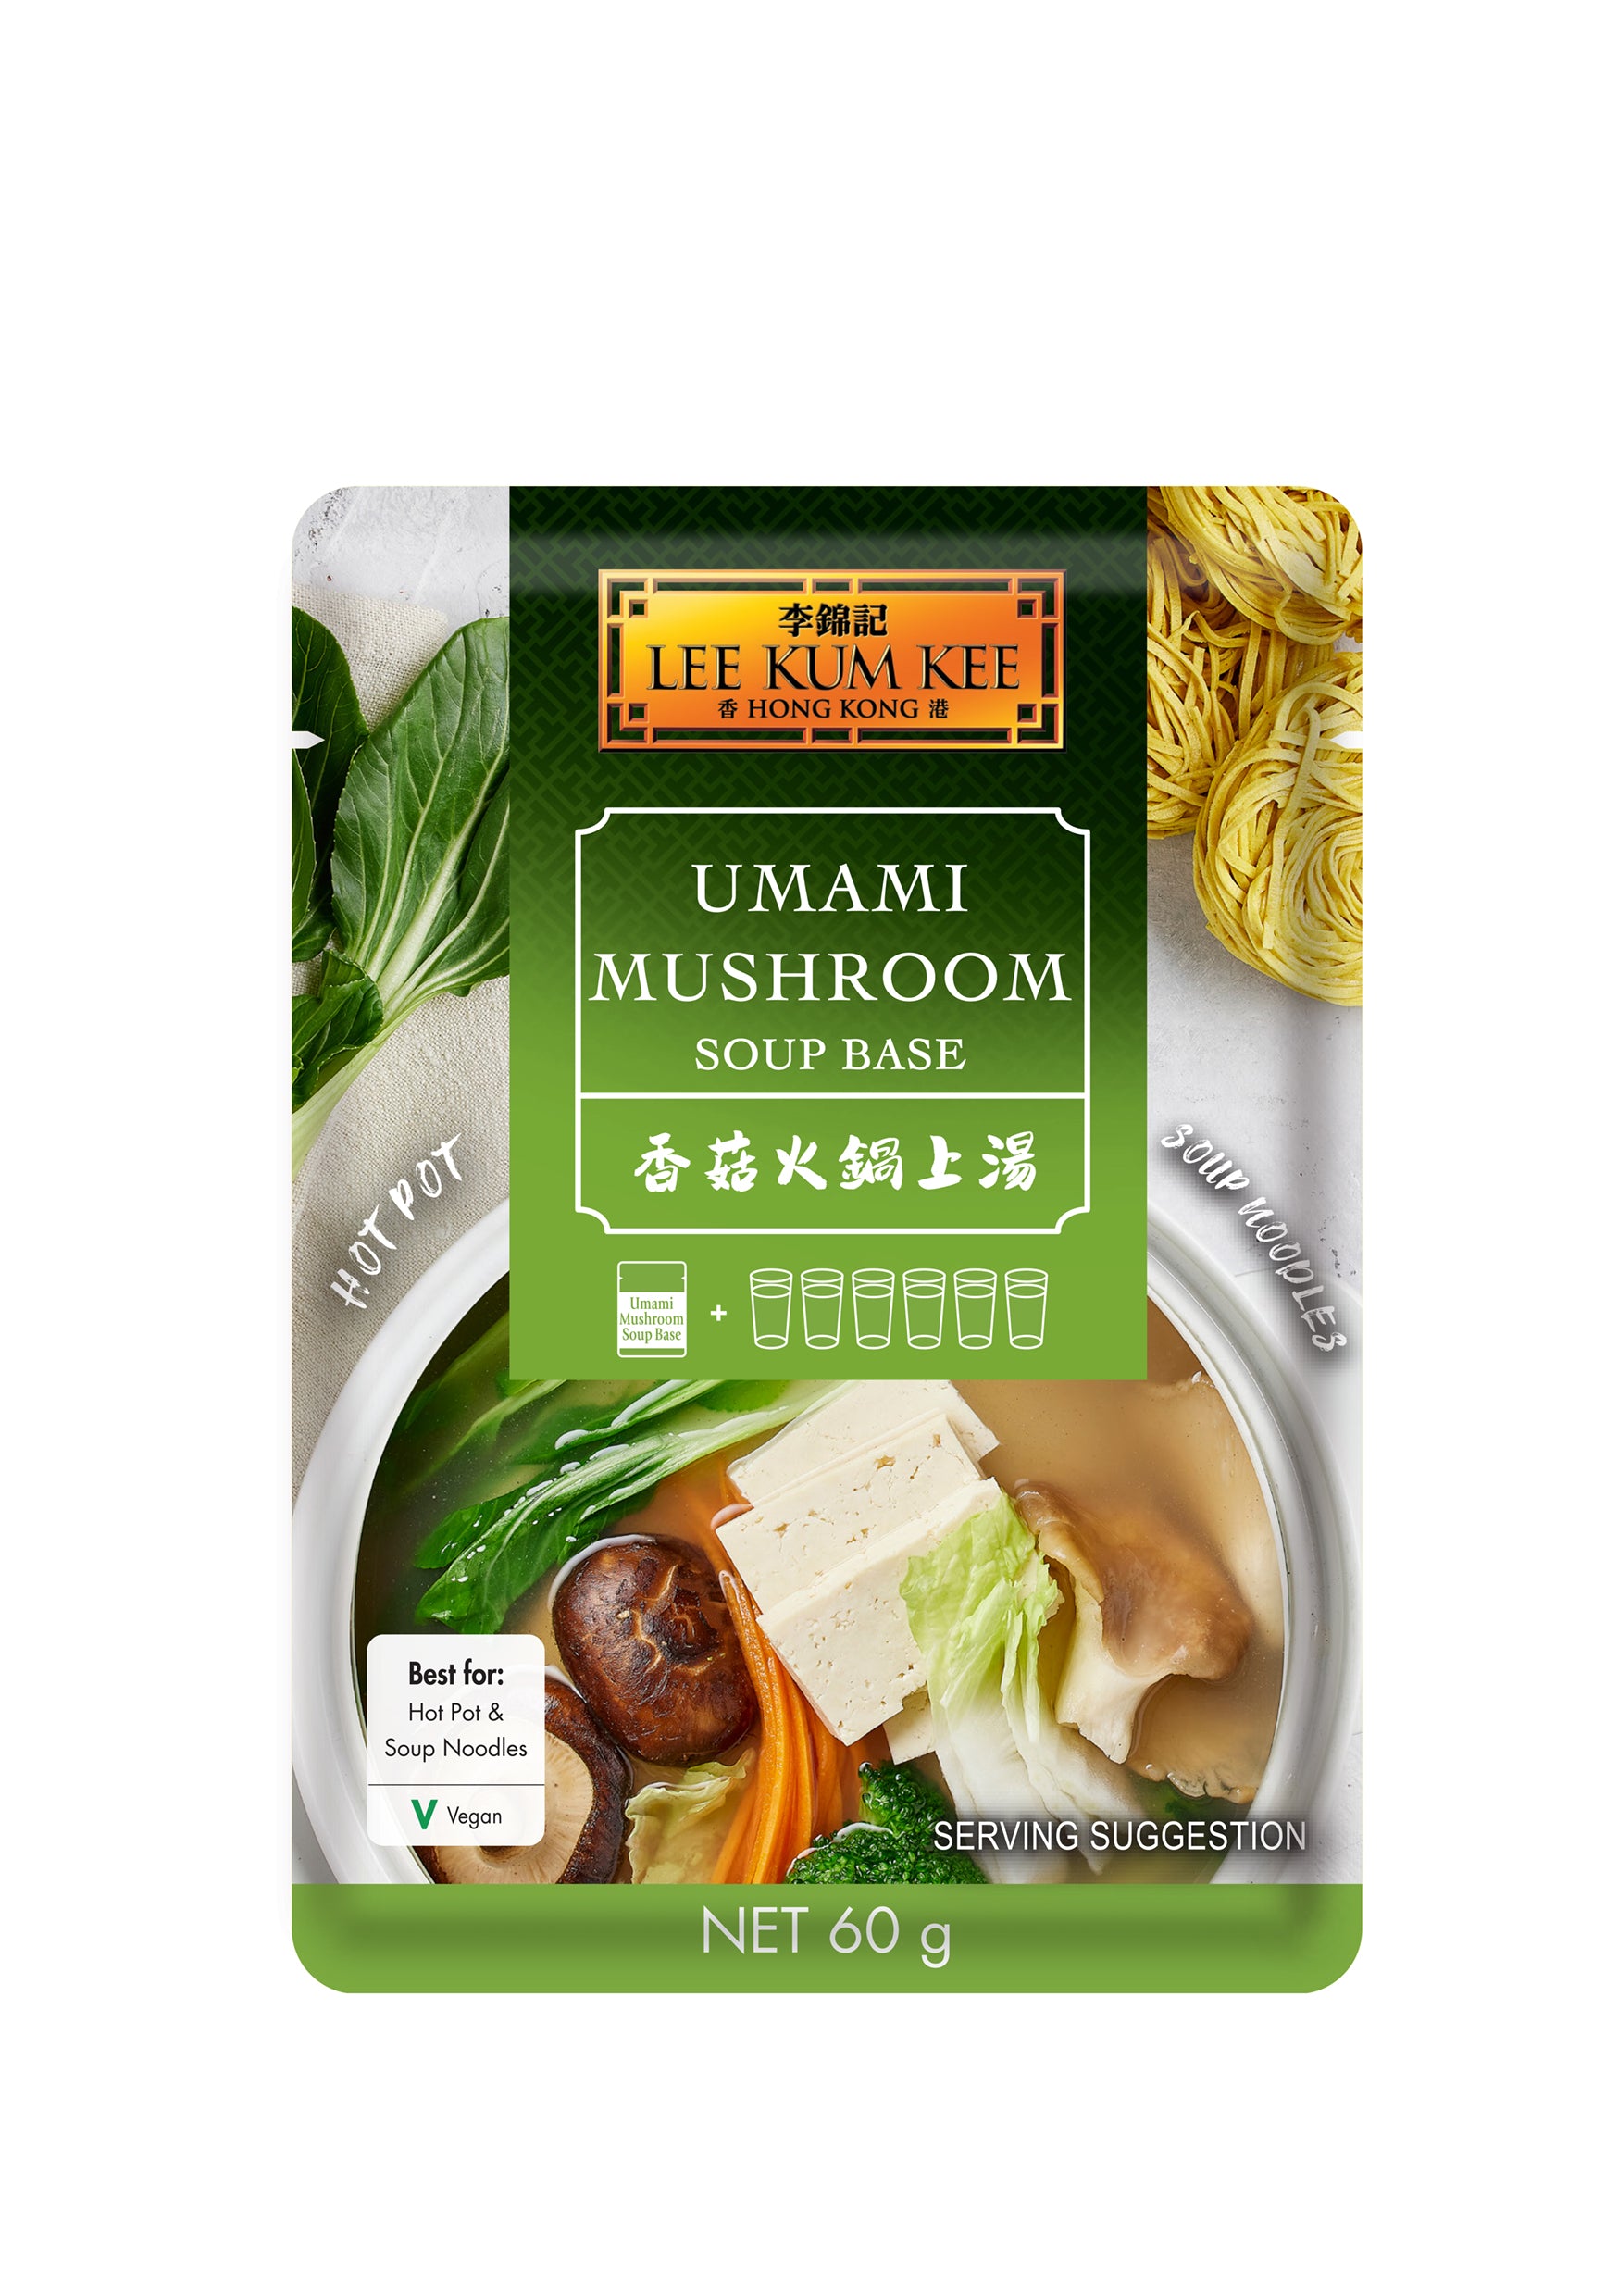 Lee Kum Kee Umami Mushroom Soup Base 12x50g